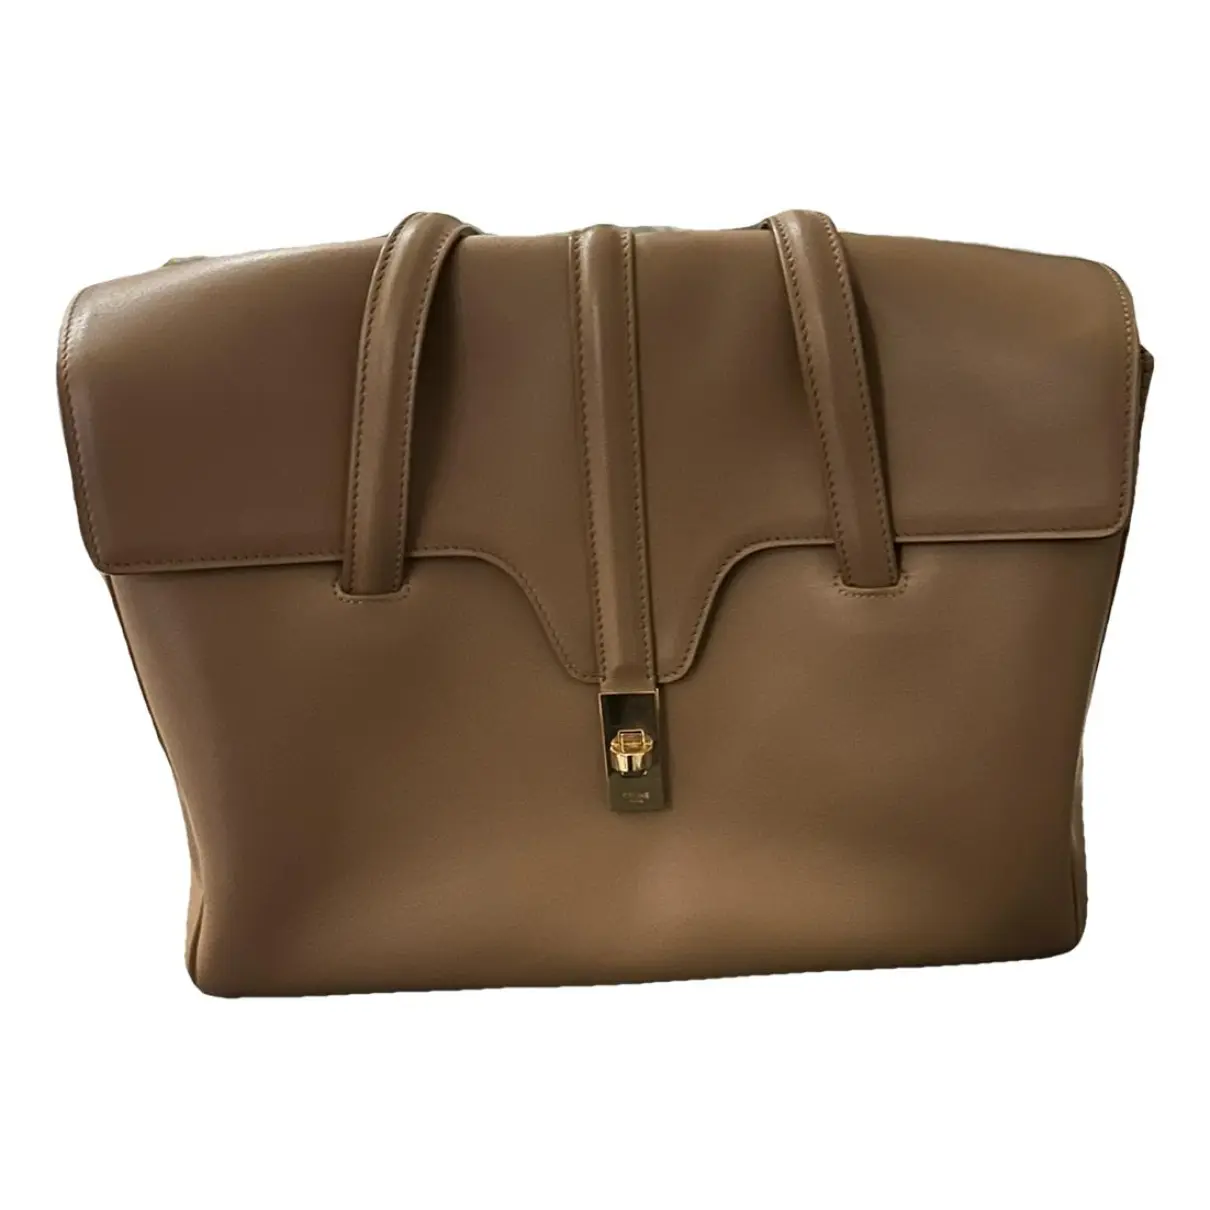 Sac 16 leather handbag